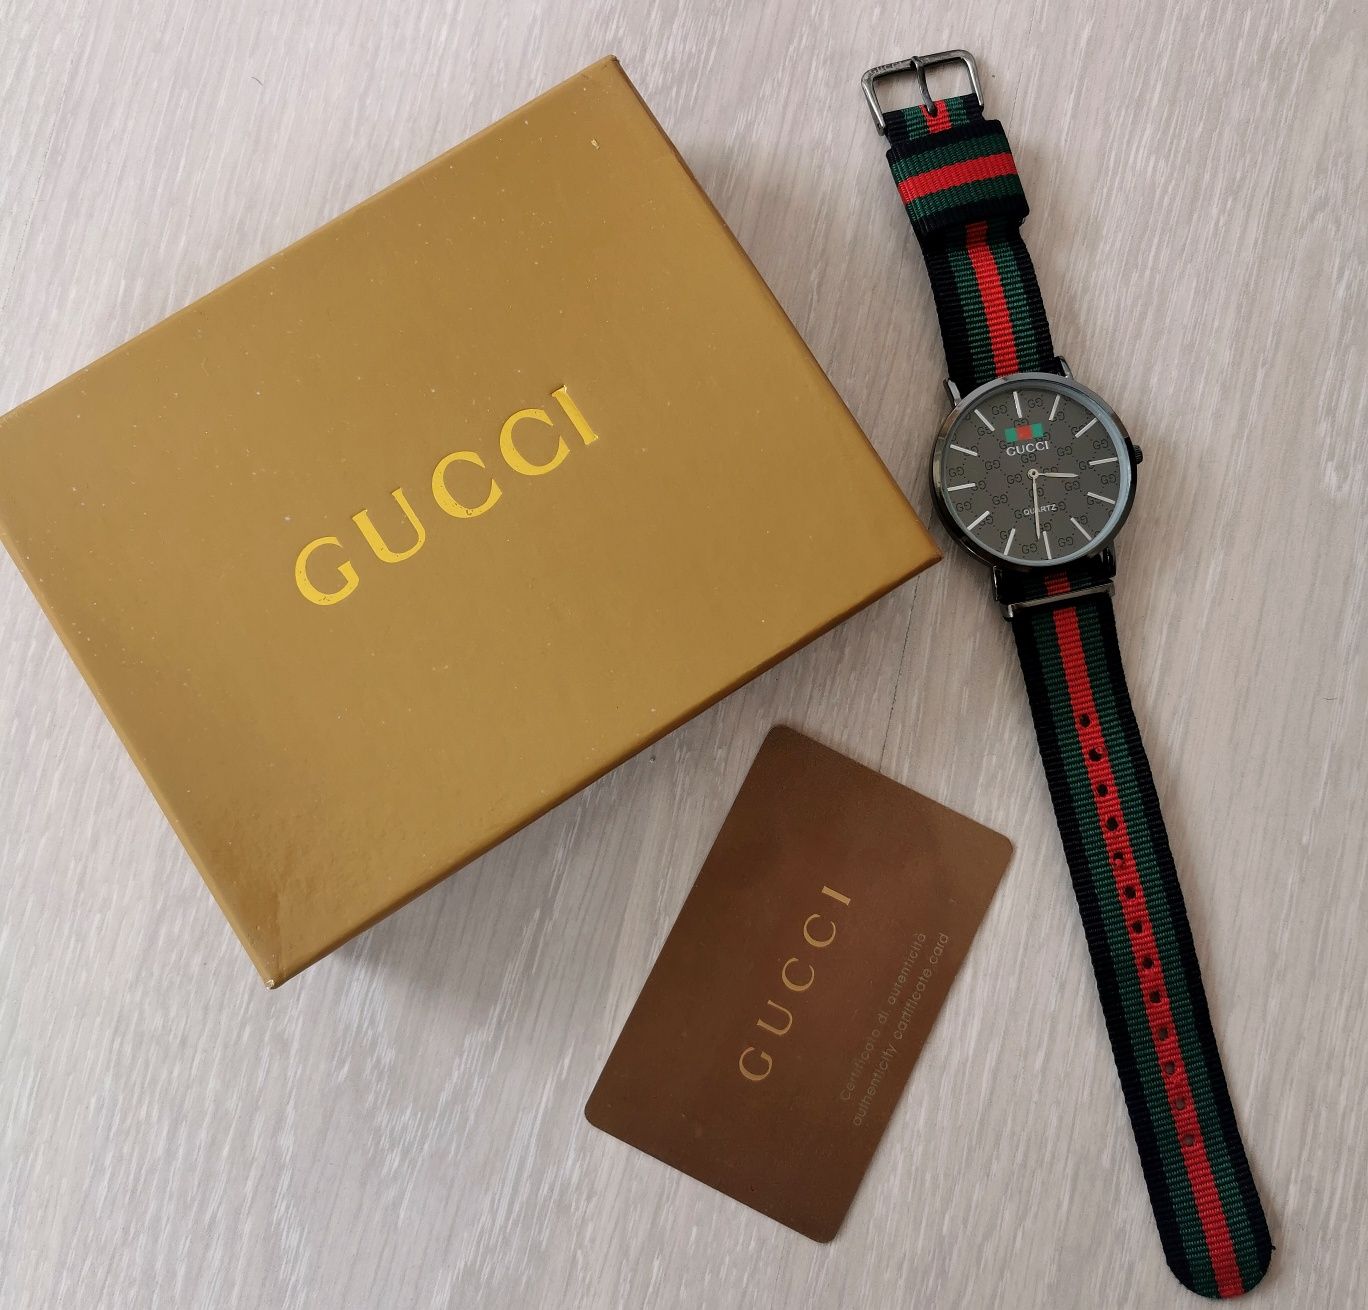 Подаръчен Комплект - Часовник Gucci + Оригинална кутия и карта